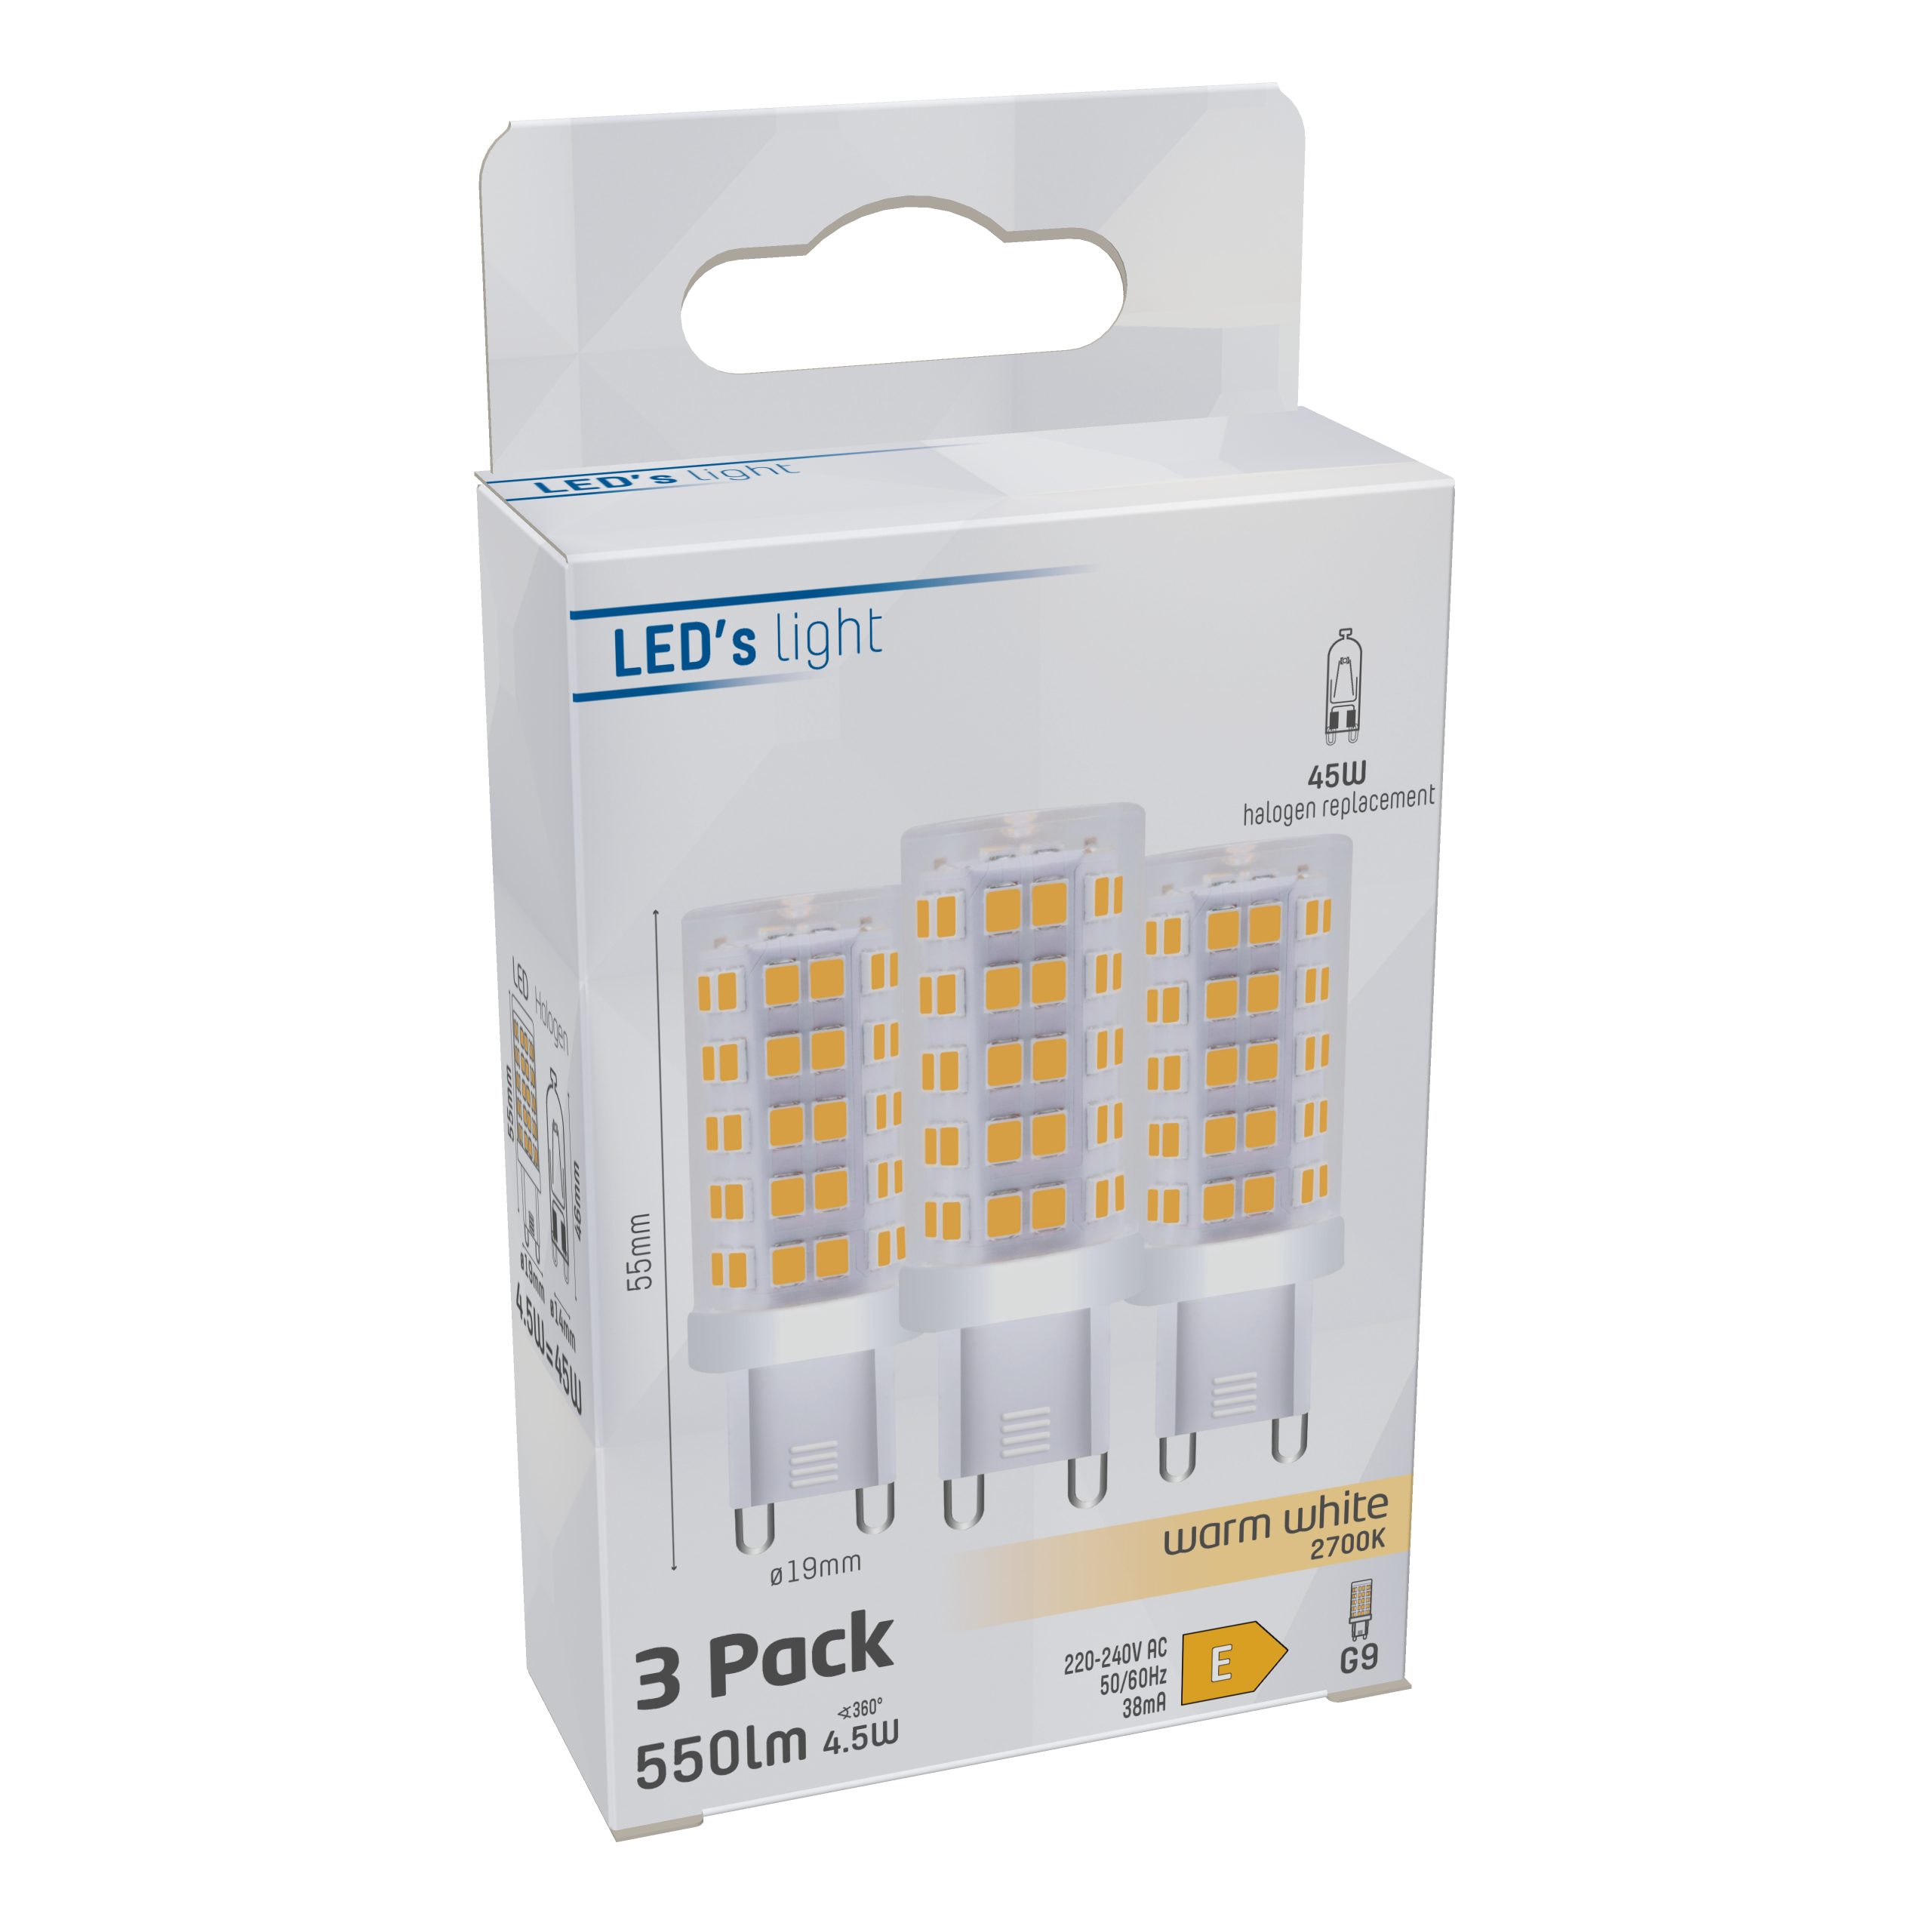 LED's light LED-Leuchtmittel LED 3-Pack 0620136 G9, Klar Kapsel, G9 4.5W warmweiß